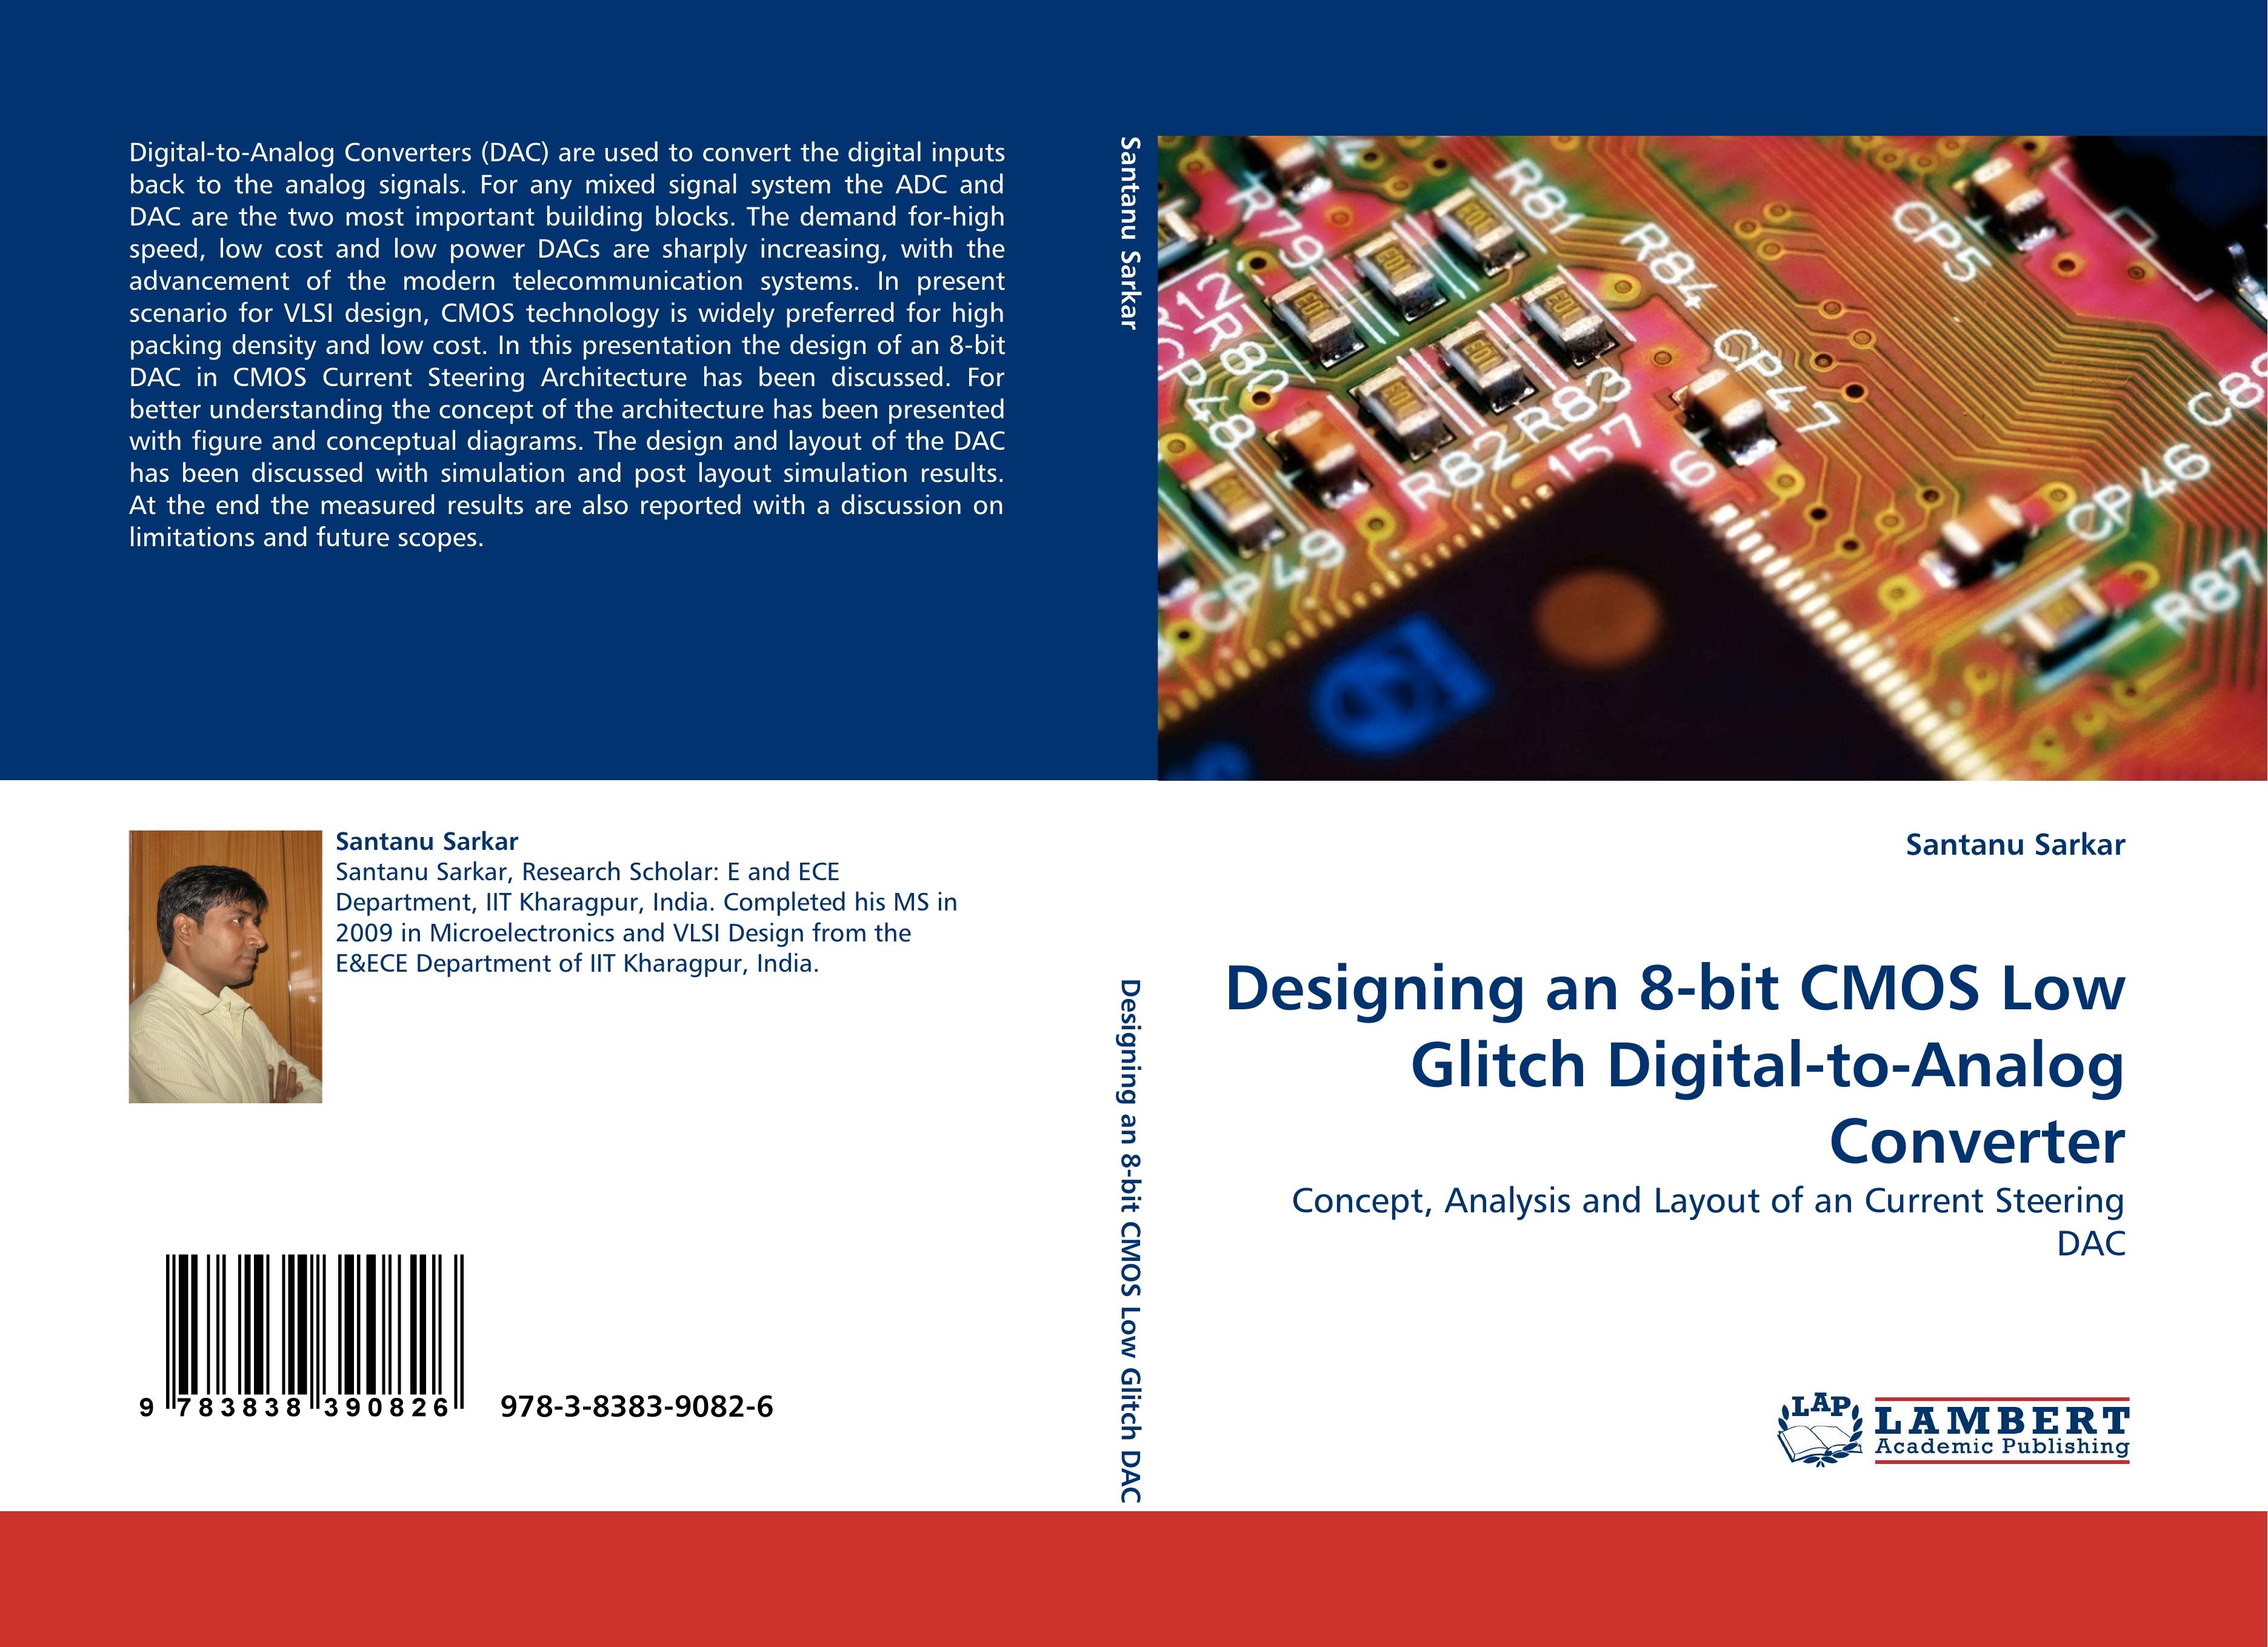 Designing an 8-bit CMOS Low Glitch Digital-to-Analog Converter - Santanu Sarkar